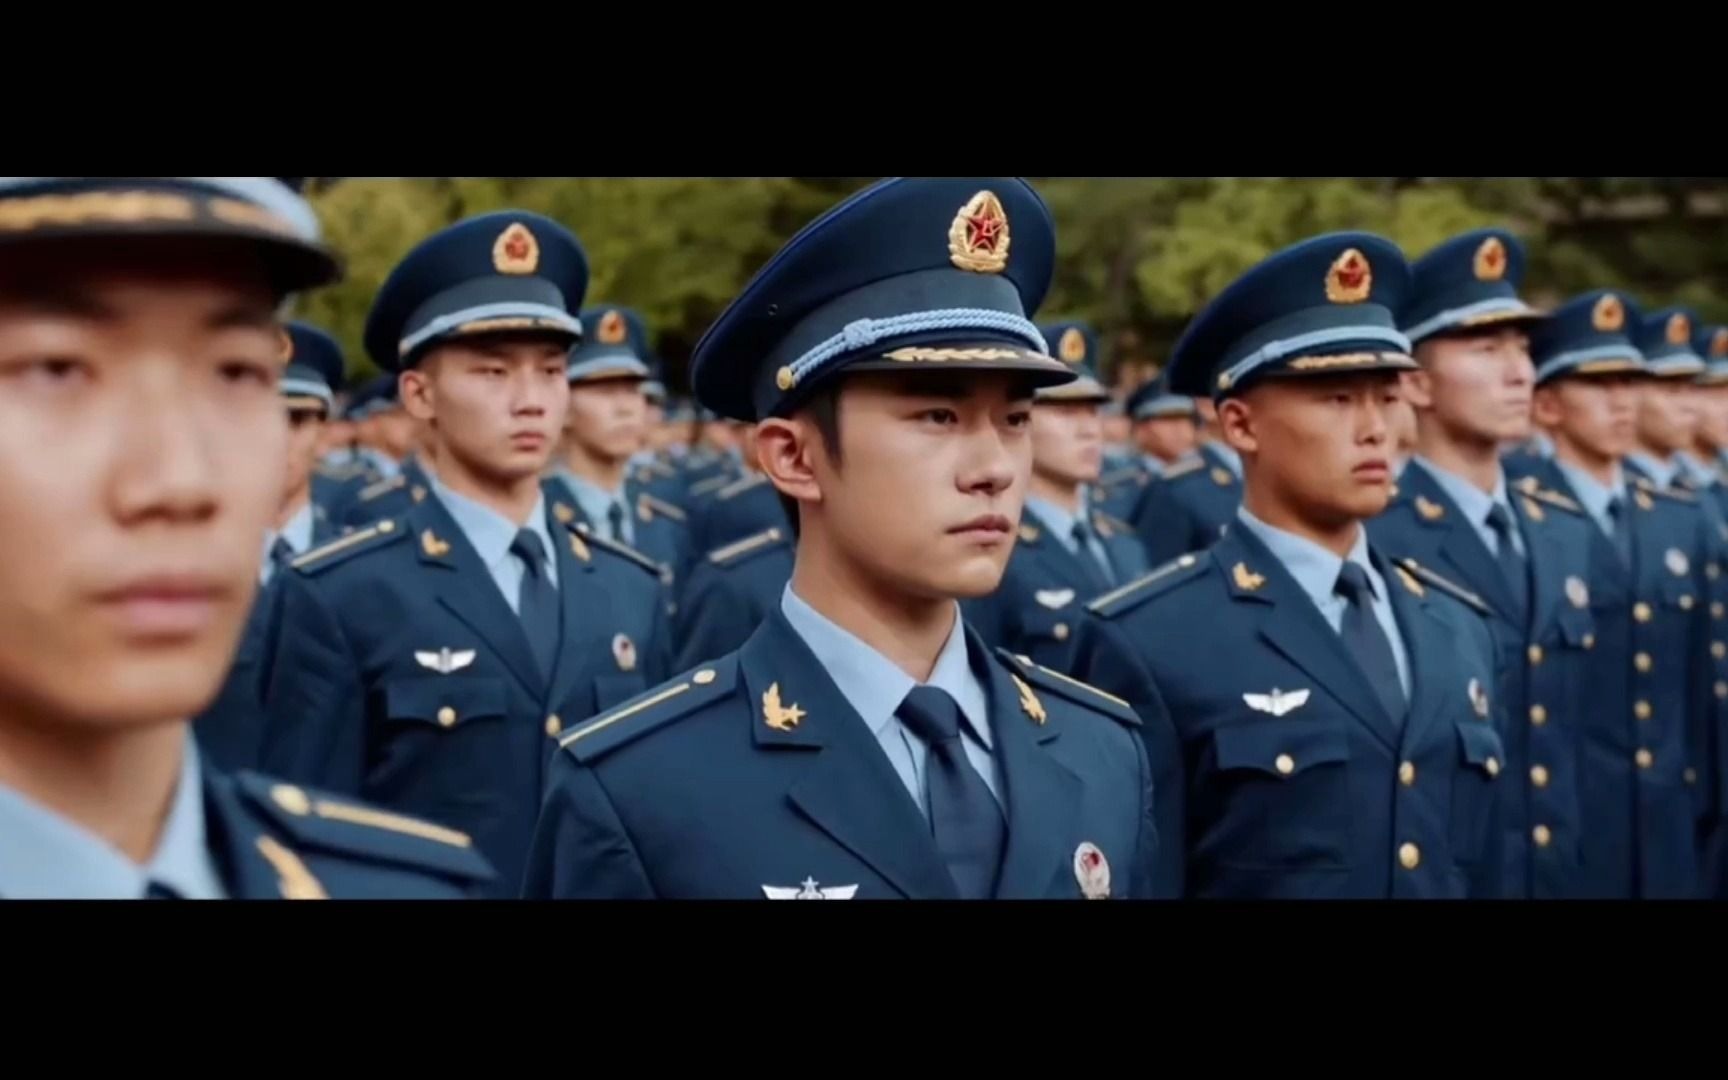 易烊千玺空军招飞宣传片来袭,一身空军制服的千玺太帅气了!